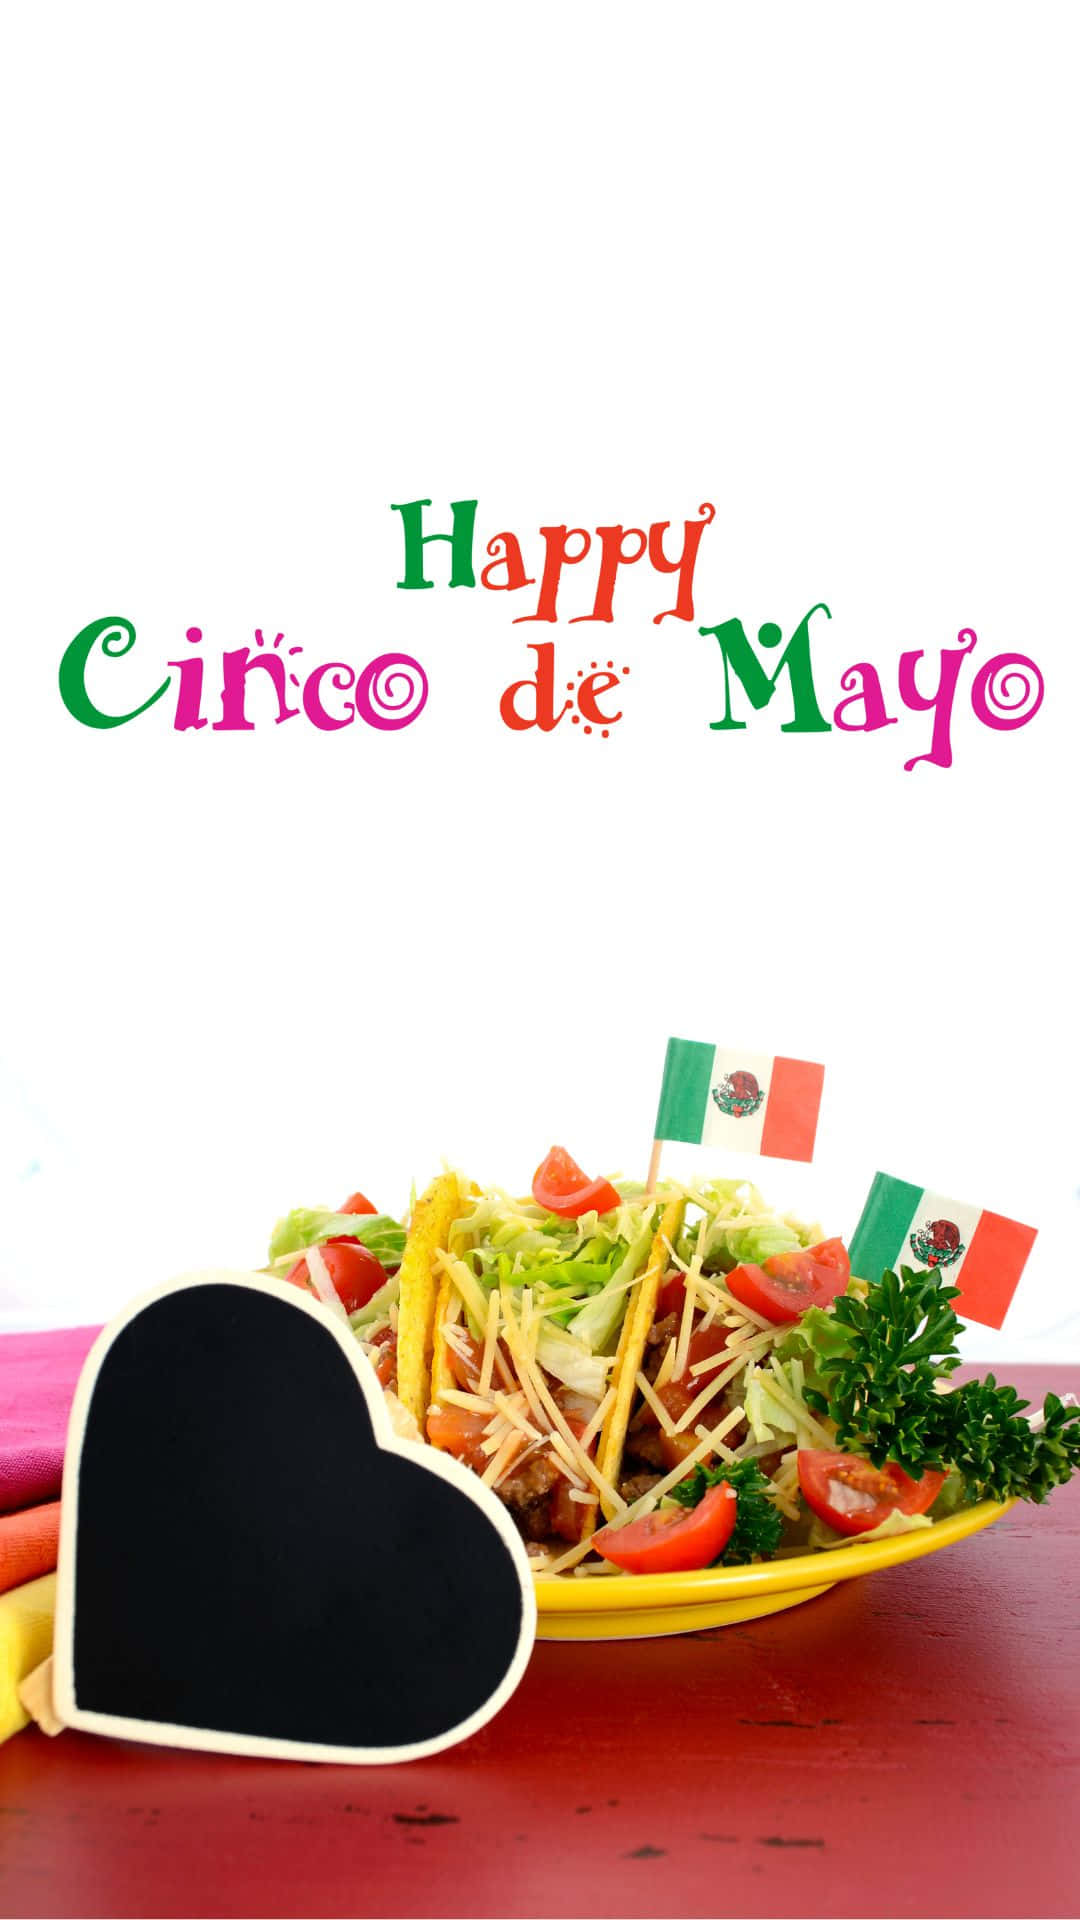 Gladcinco De Mayo - Hd Baggrunde Wallpaper